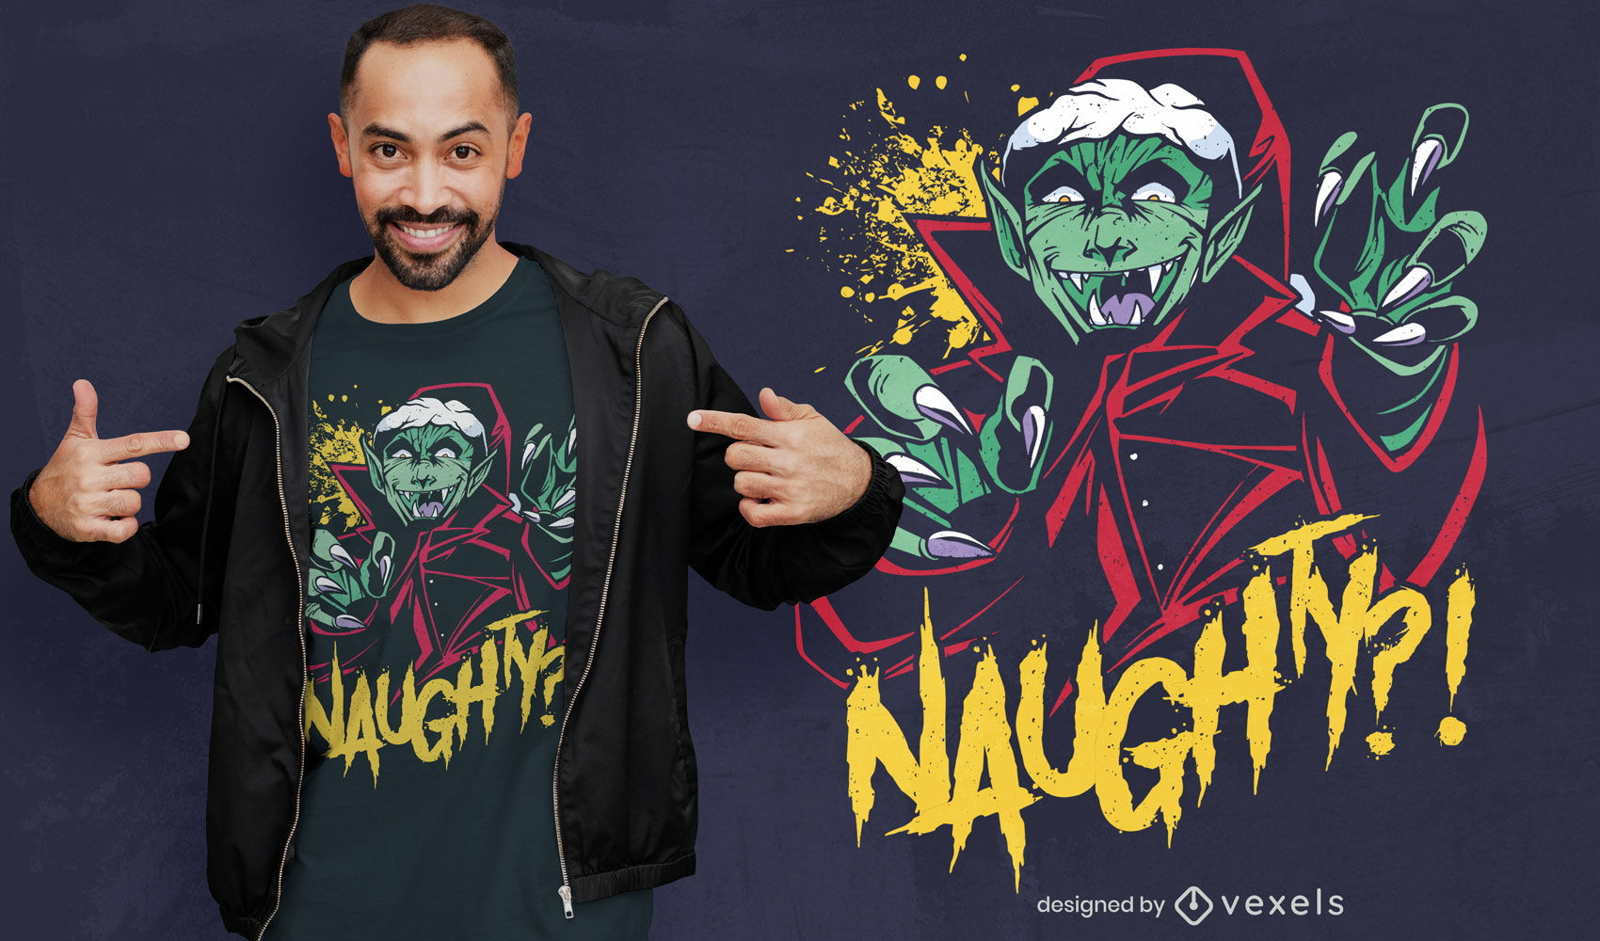 Naughty vampire Christmas t-shirt design